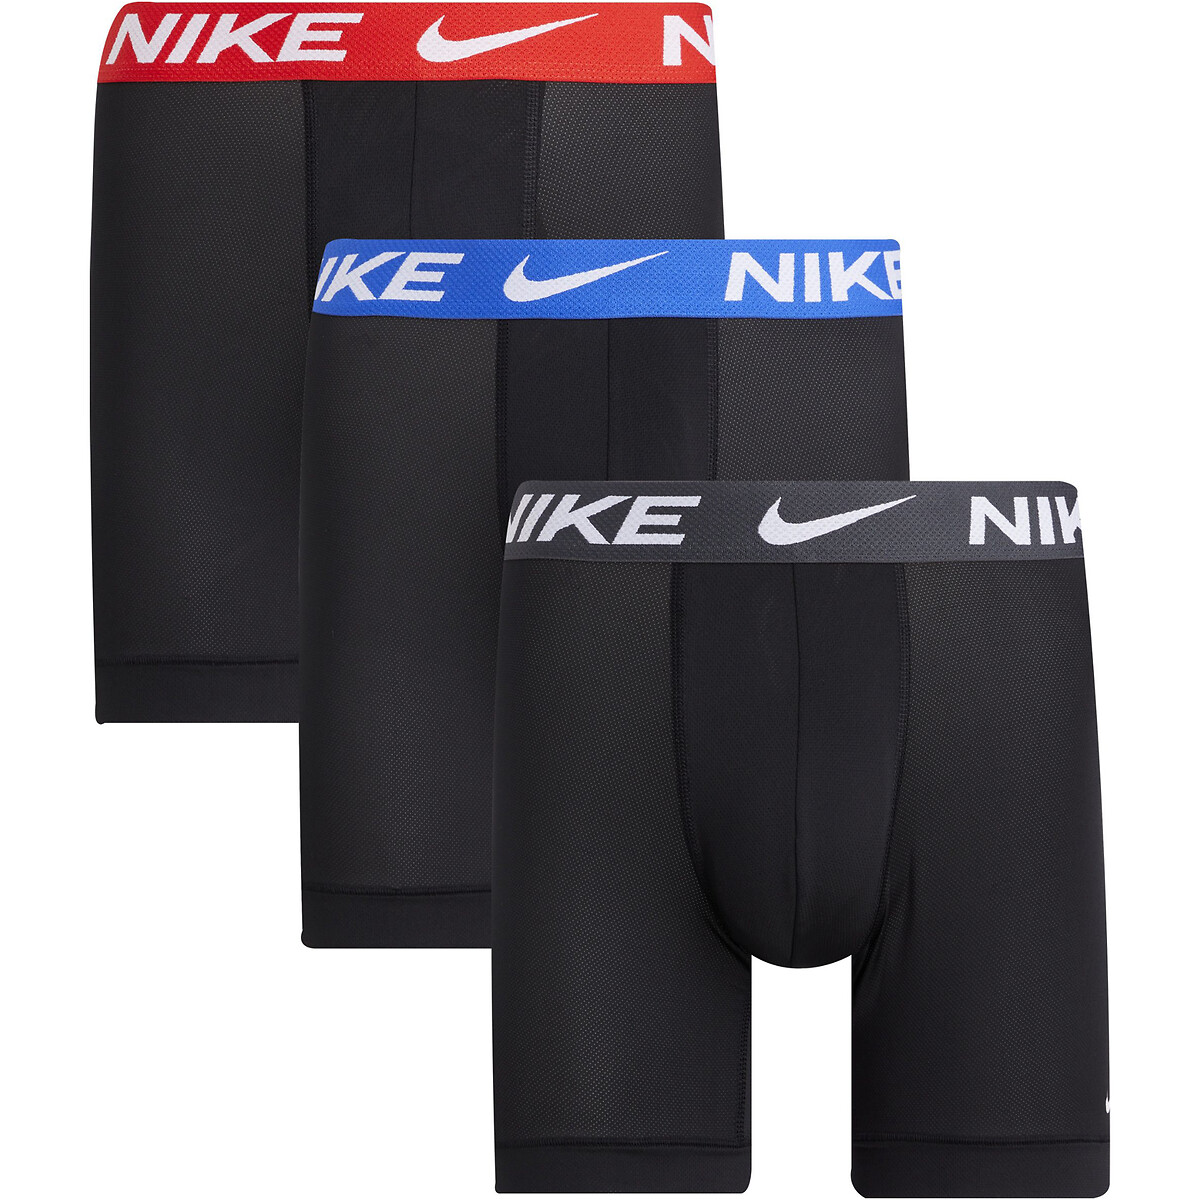 Nike Lote de 3 boxers compridos, dri-fit advanced micro